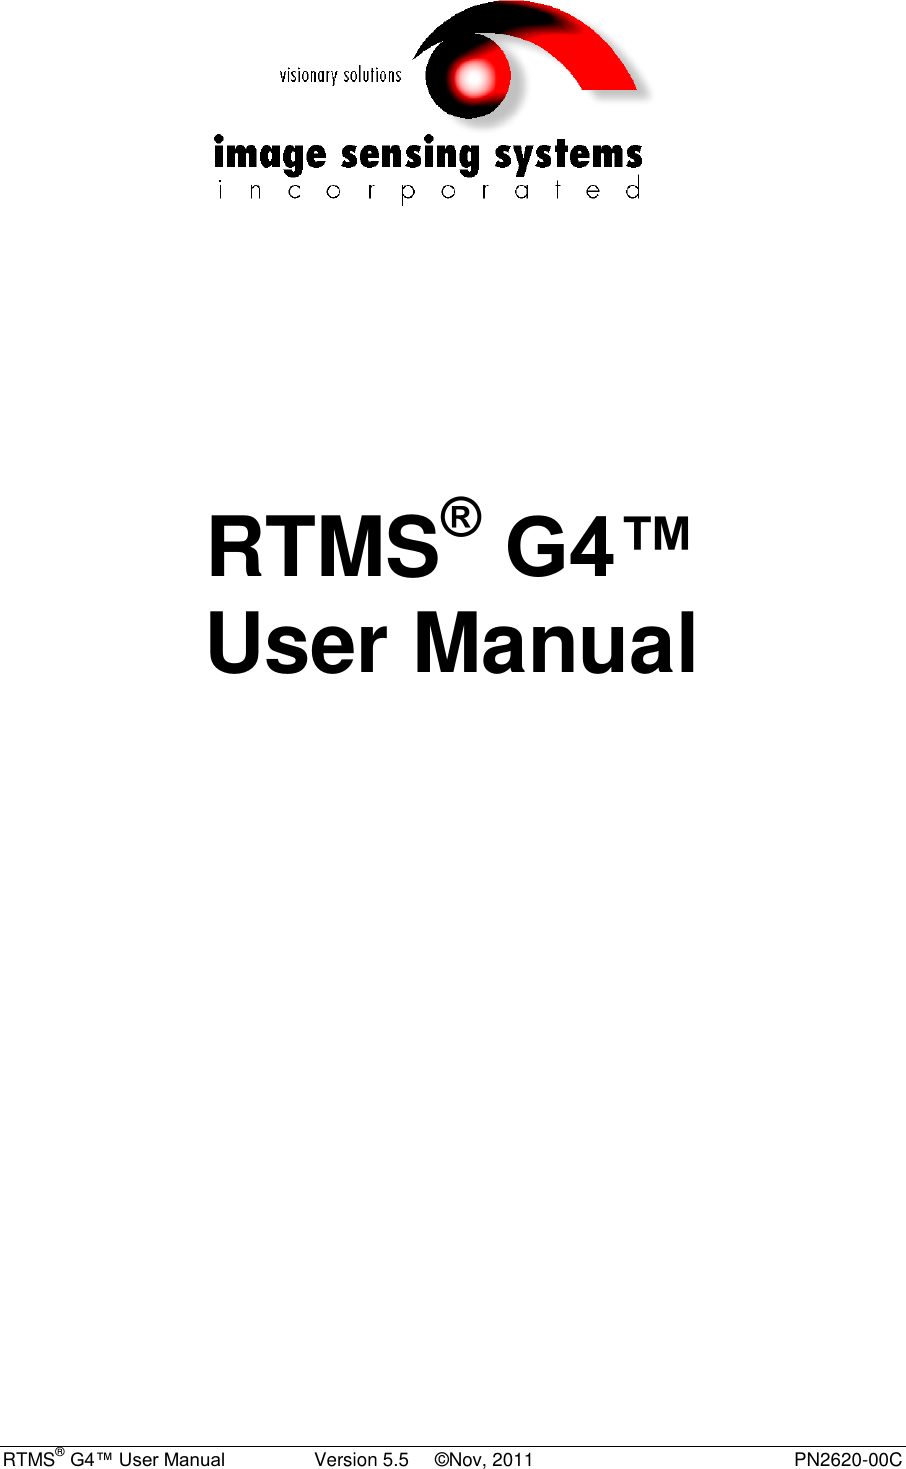  RTMS® G4™ User Manual                 Version 5.5     ©Nov, 2011  PN2620-00C         RTMS® G4™ User Manual    